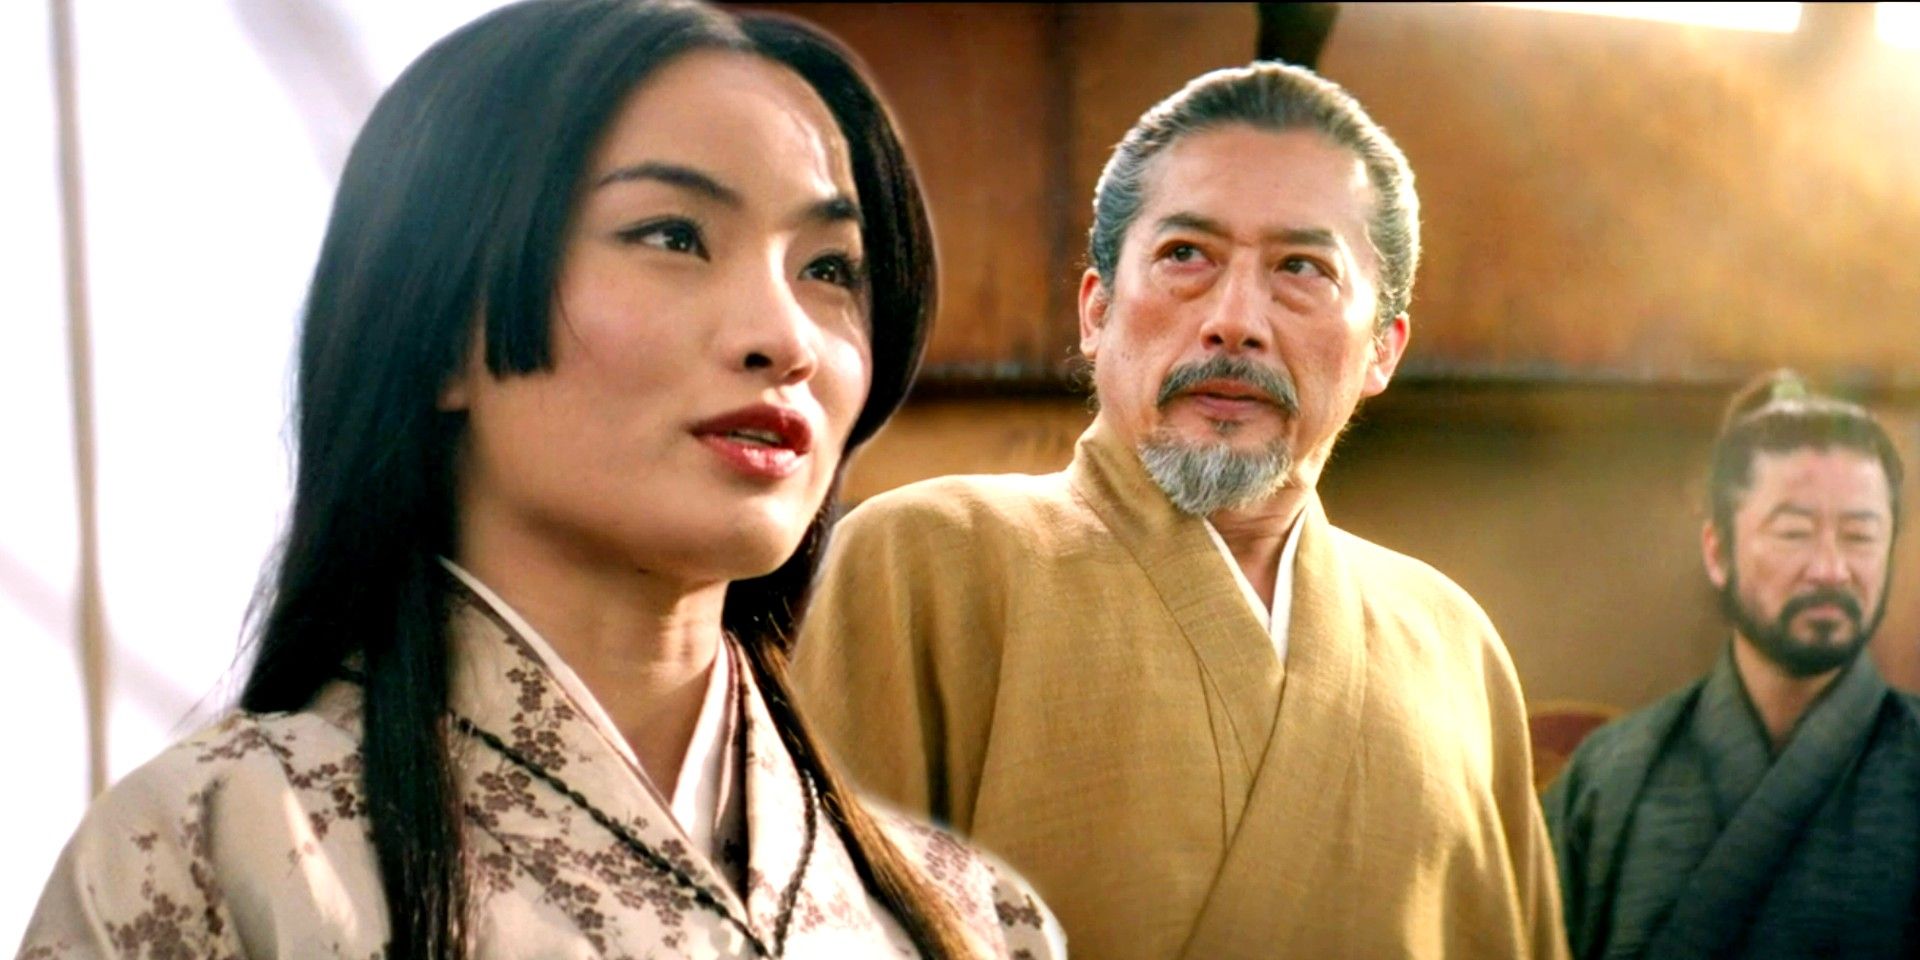 El histórico y épico Shōgun de FX alcanza cifras récord de streaming